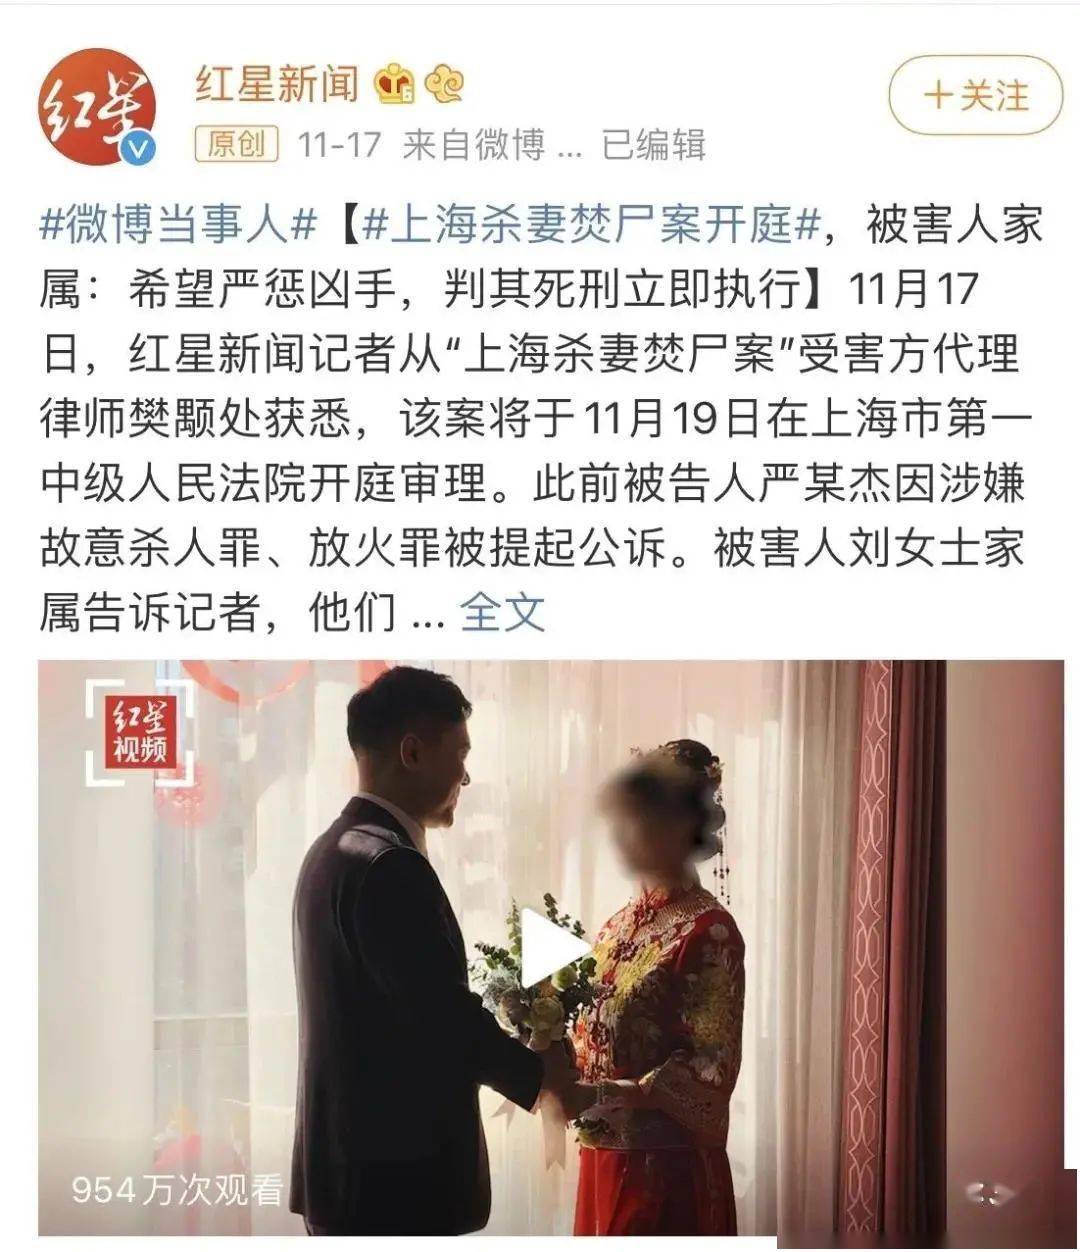 上海26岁富二代杀妻焚尸案细节曝光如果你有女儿请一定教她如何择偶